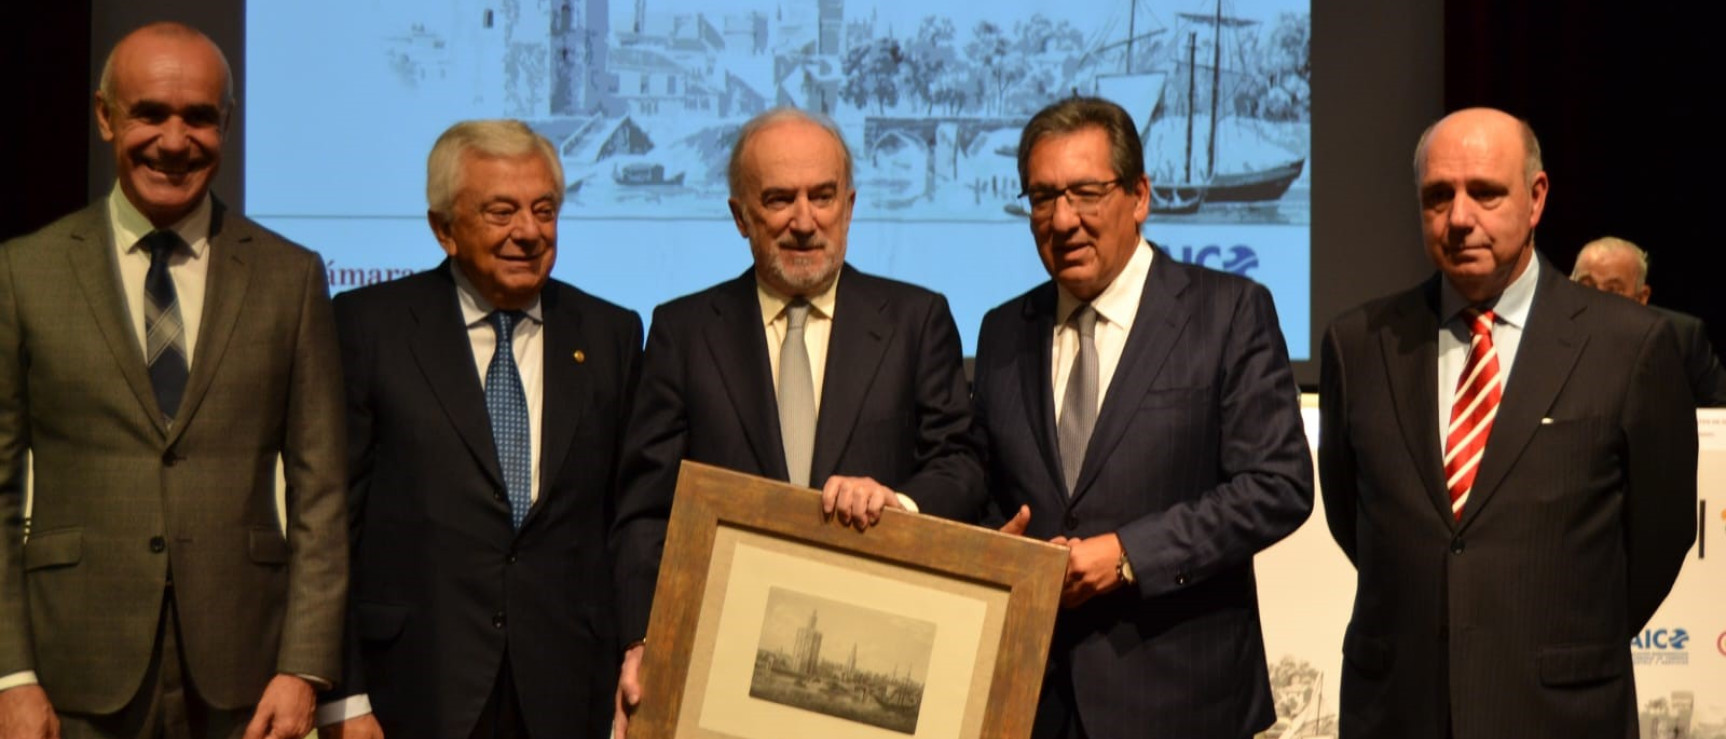 La labor de la RAE, reconocida con el Premio Iberoamericano Torre del Oro (foto: Cámara de Comercio de Sevilla)